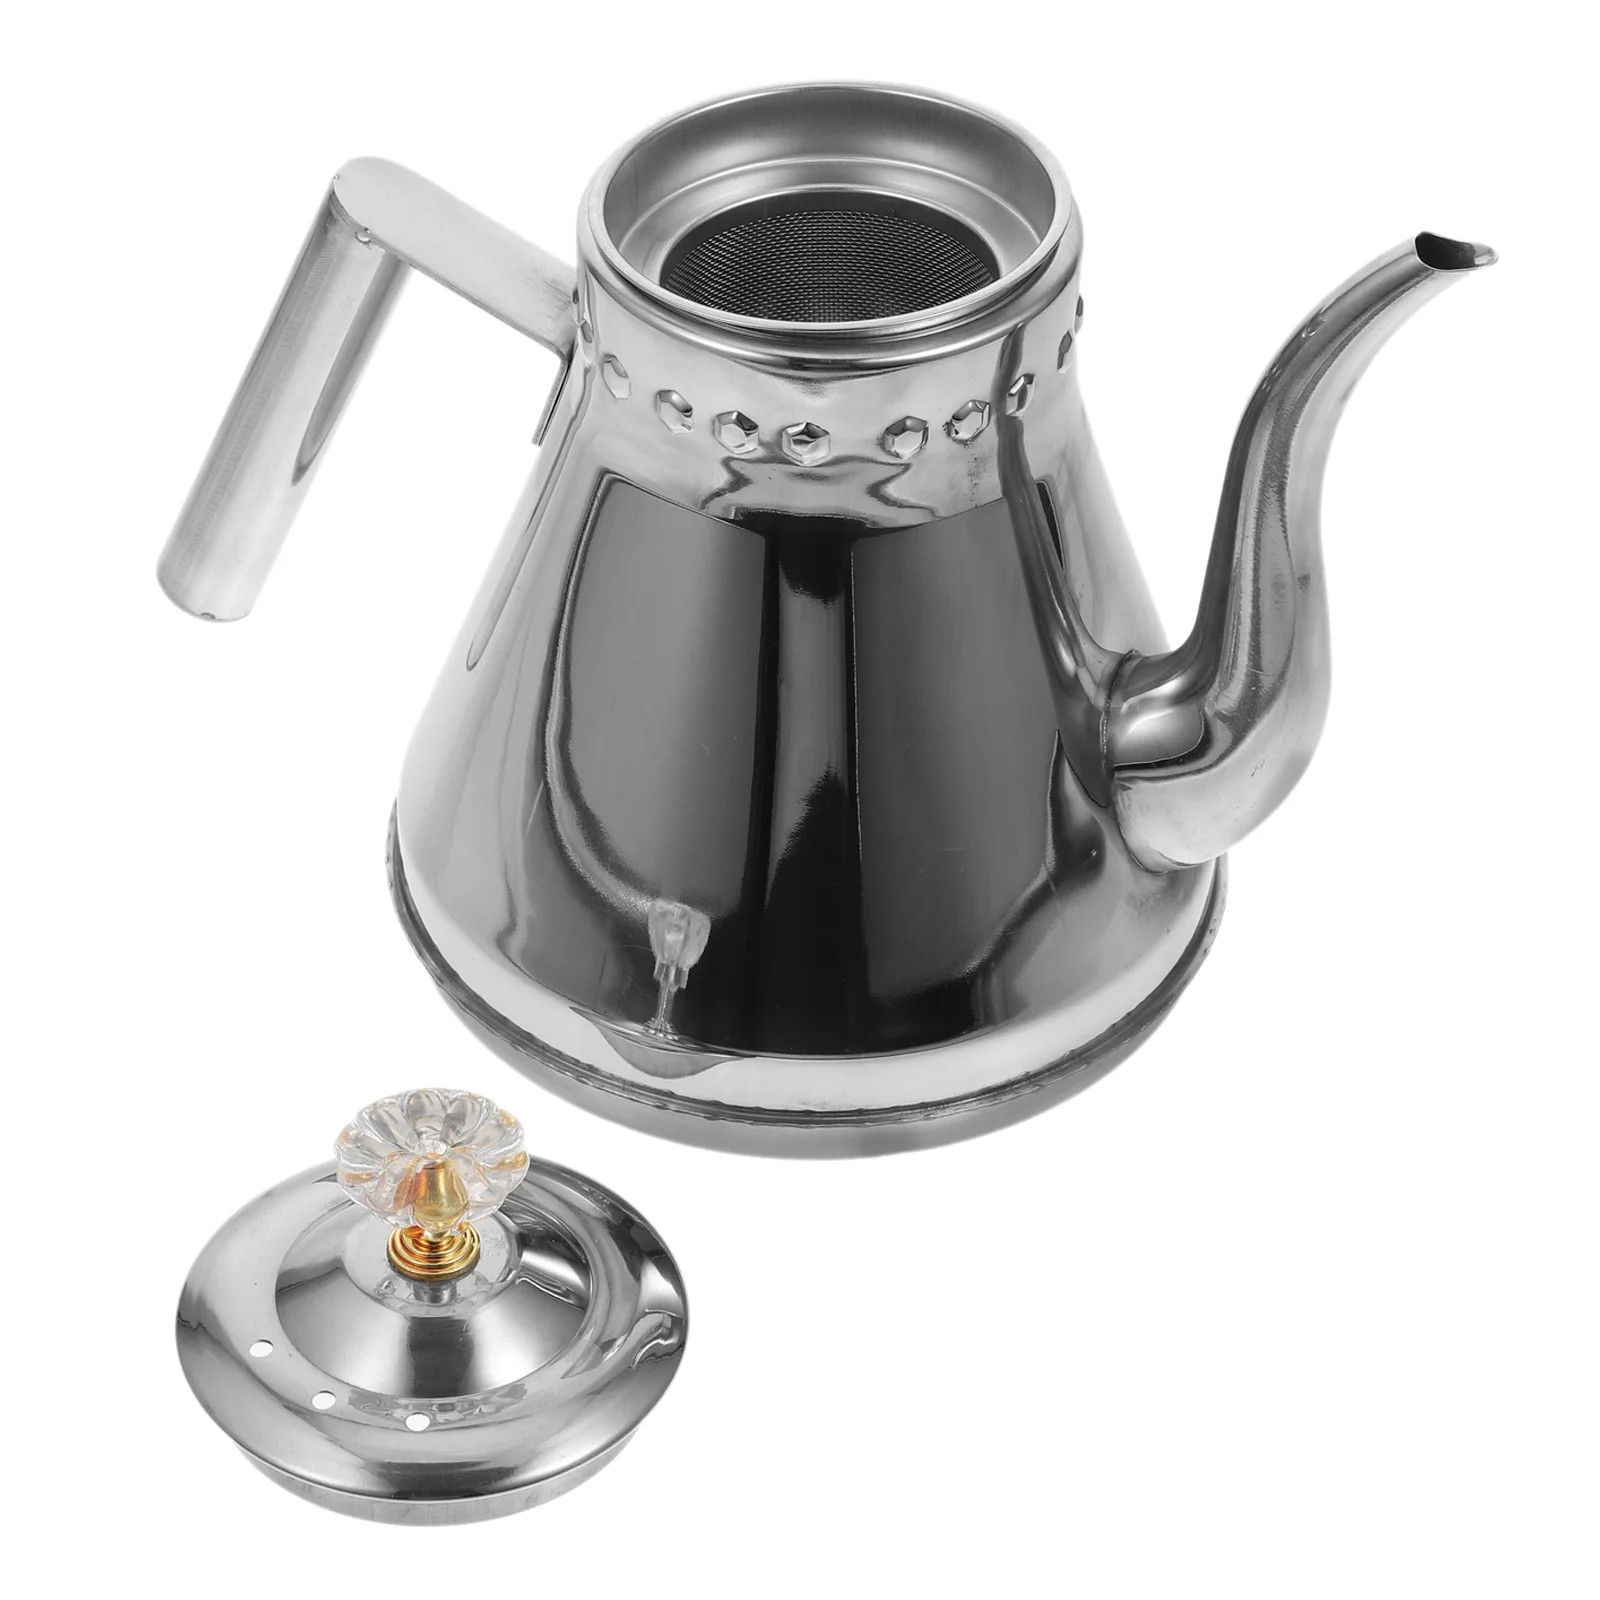 

1 шт. прочный чайник для воды, домашний чайник для чая с сетчатым фильтром, кухонный гаджет (серебристый)